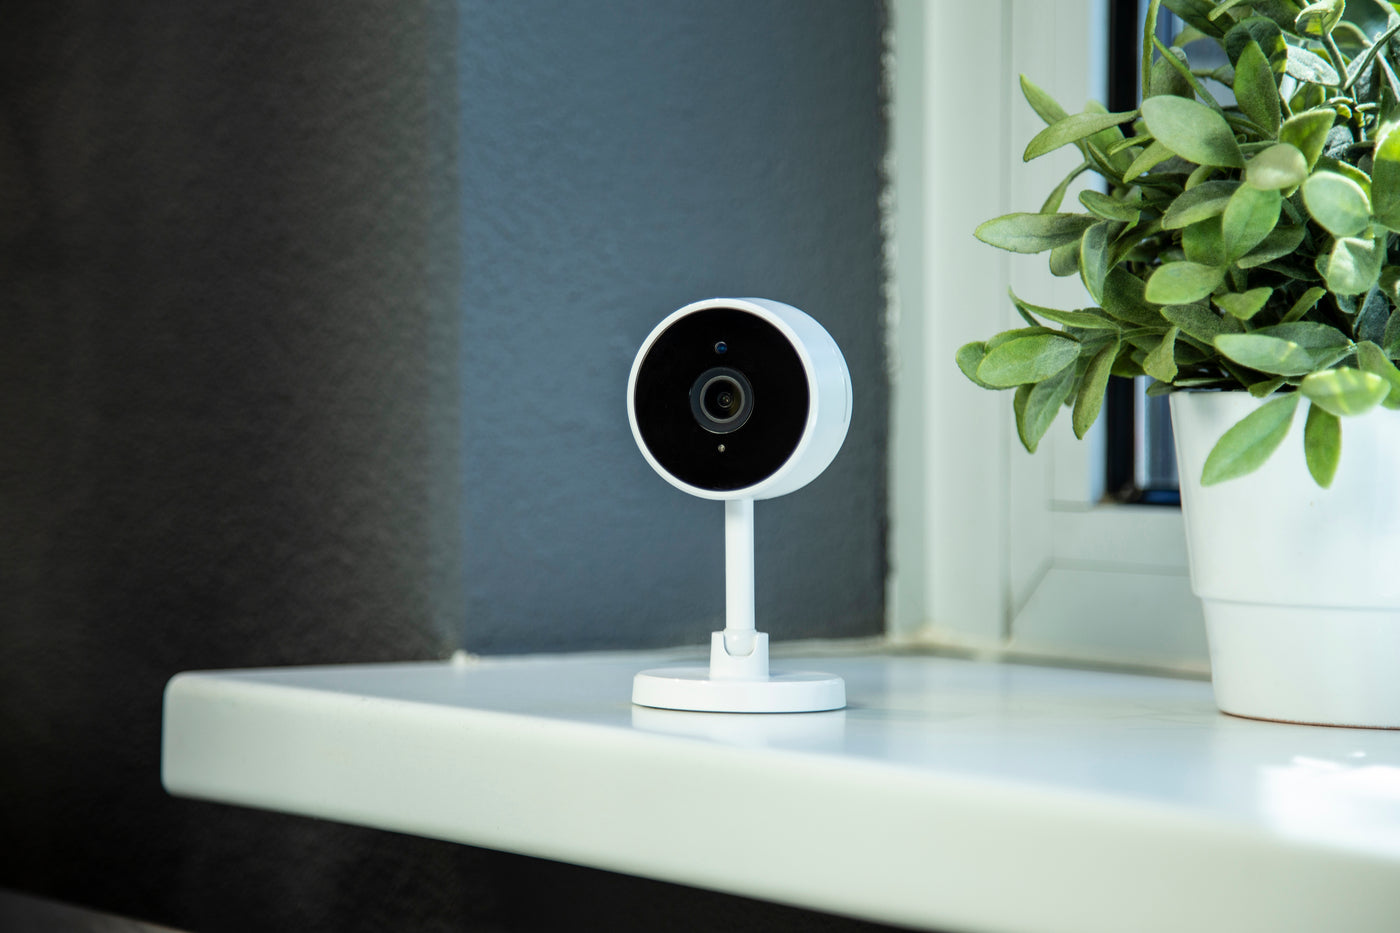 Alecto SMART-CAM10 - Smarte WLAN-Kamera, für Hausautomatisierung geeignete IP-Kamera